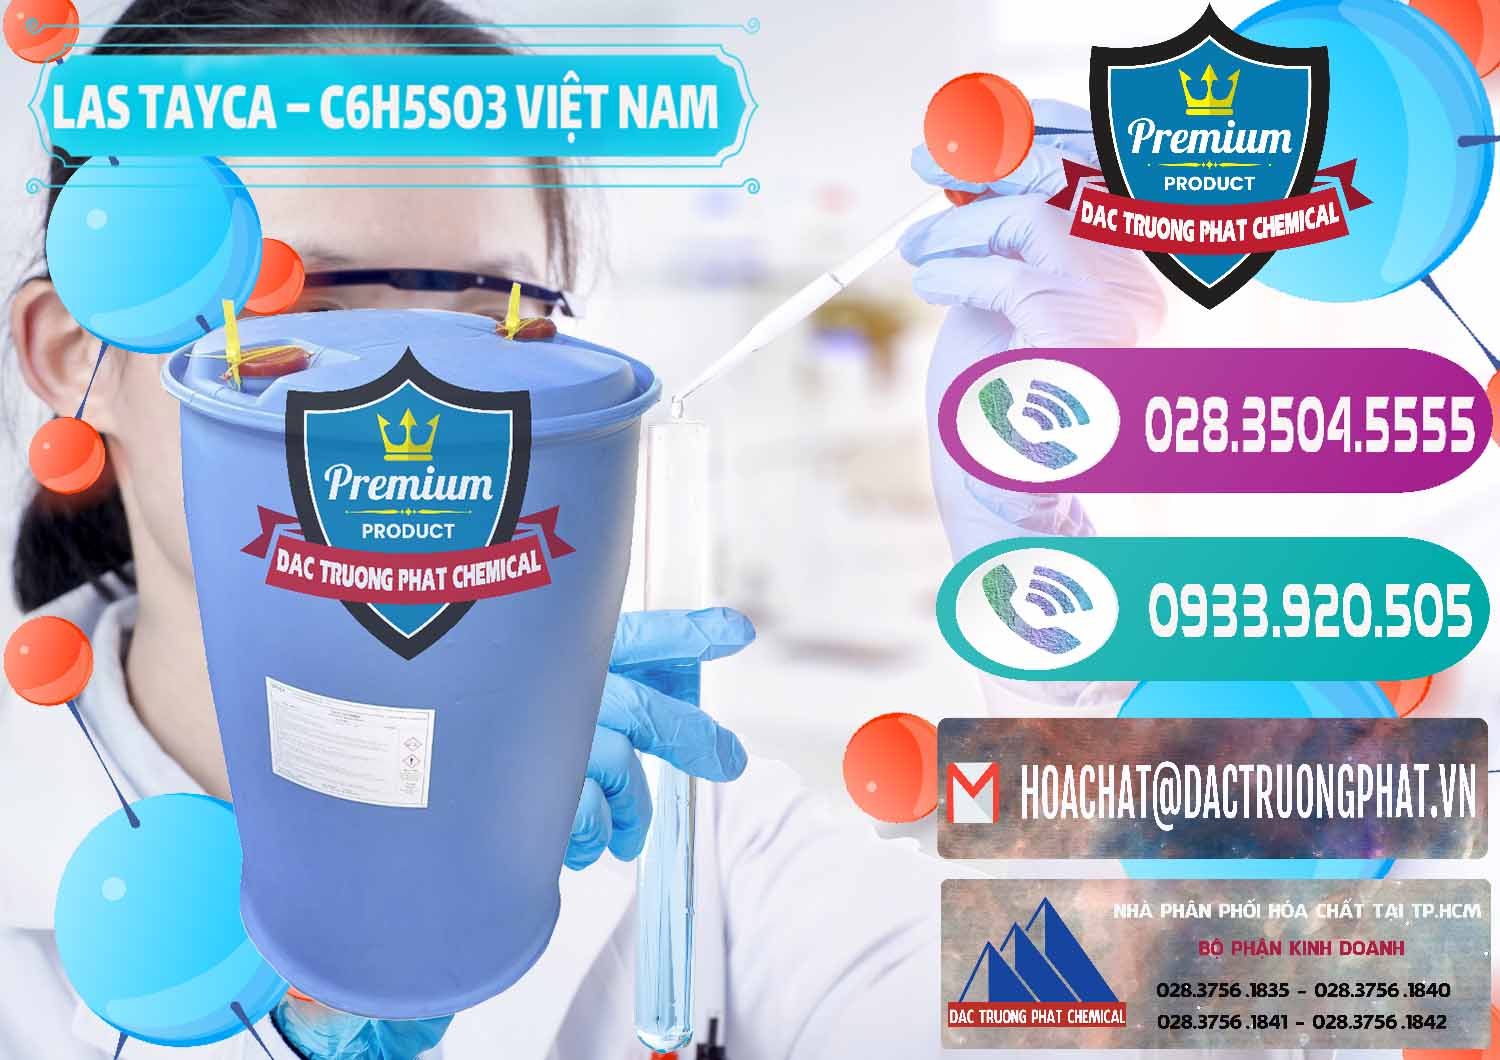 Chuyên kinh doanh và phân phối Chất tạo bọt Las Tayca Việt Nam - 0305 - Cty bán và cung ứng hóa chất tại TP.HCM - hoachatxulynuoc.com